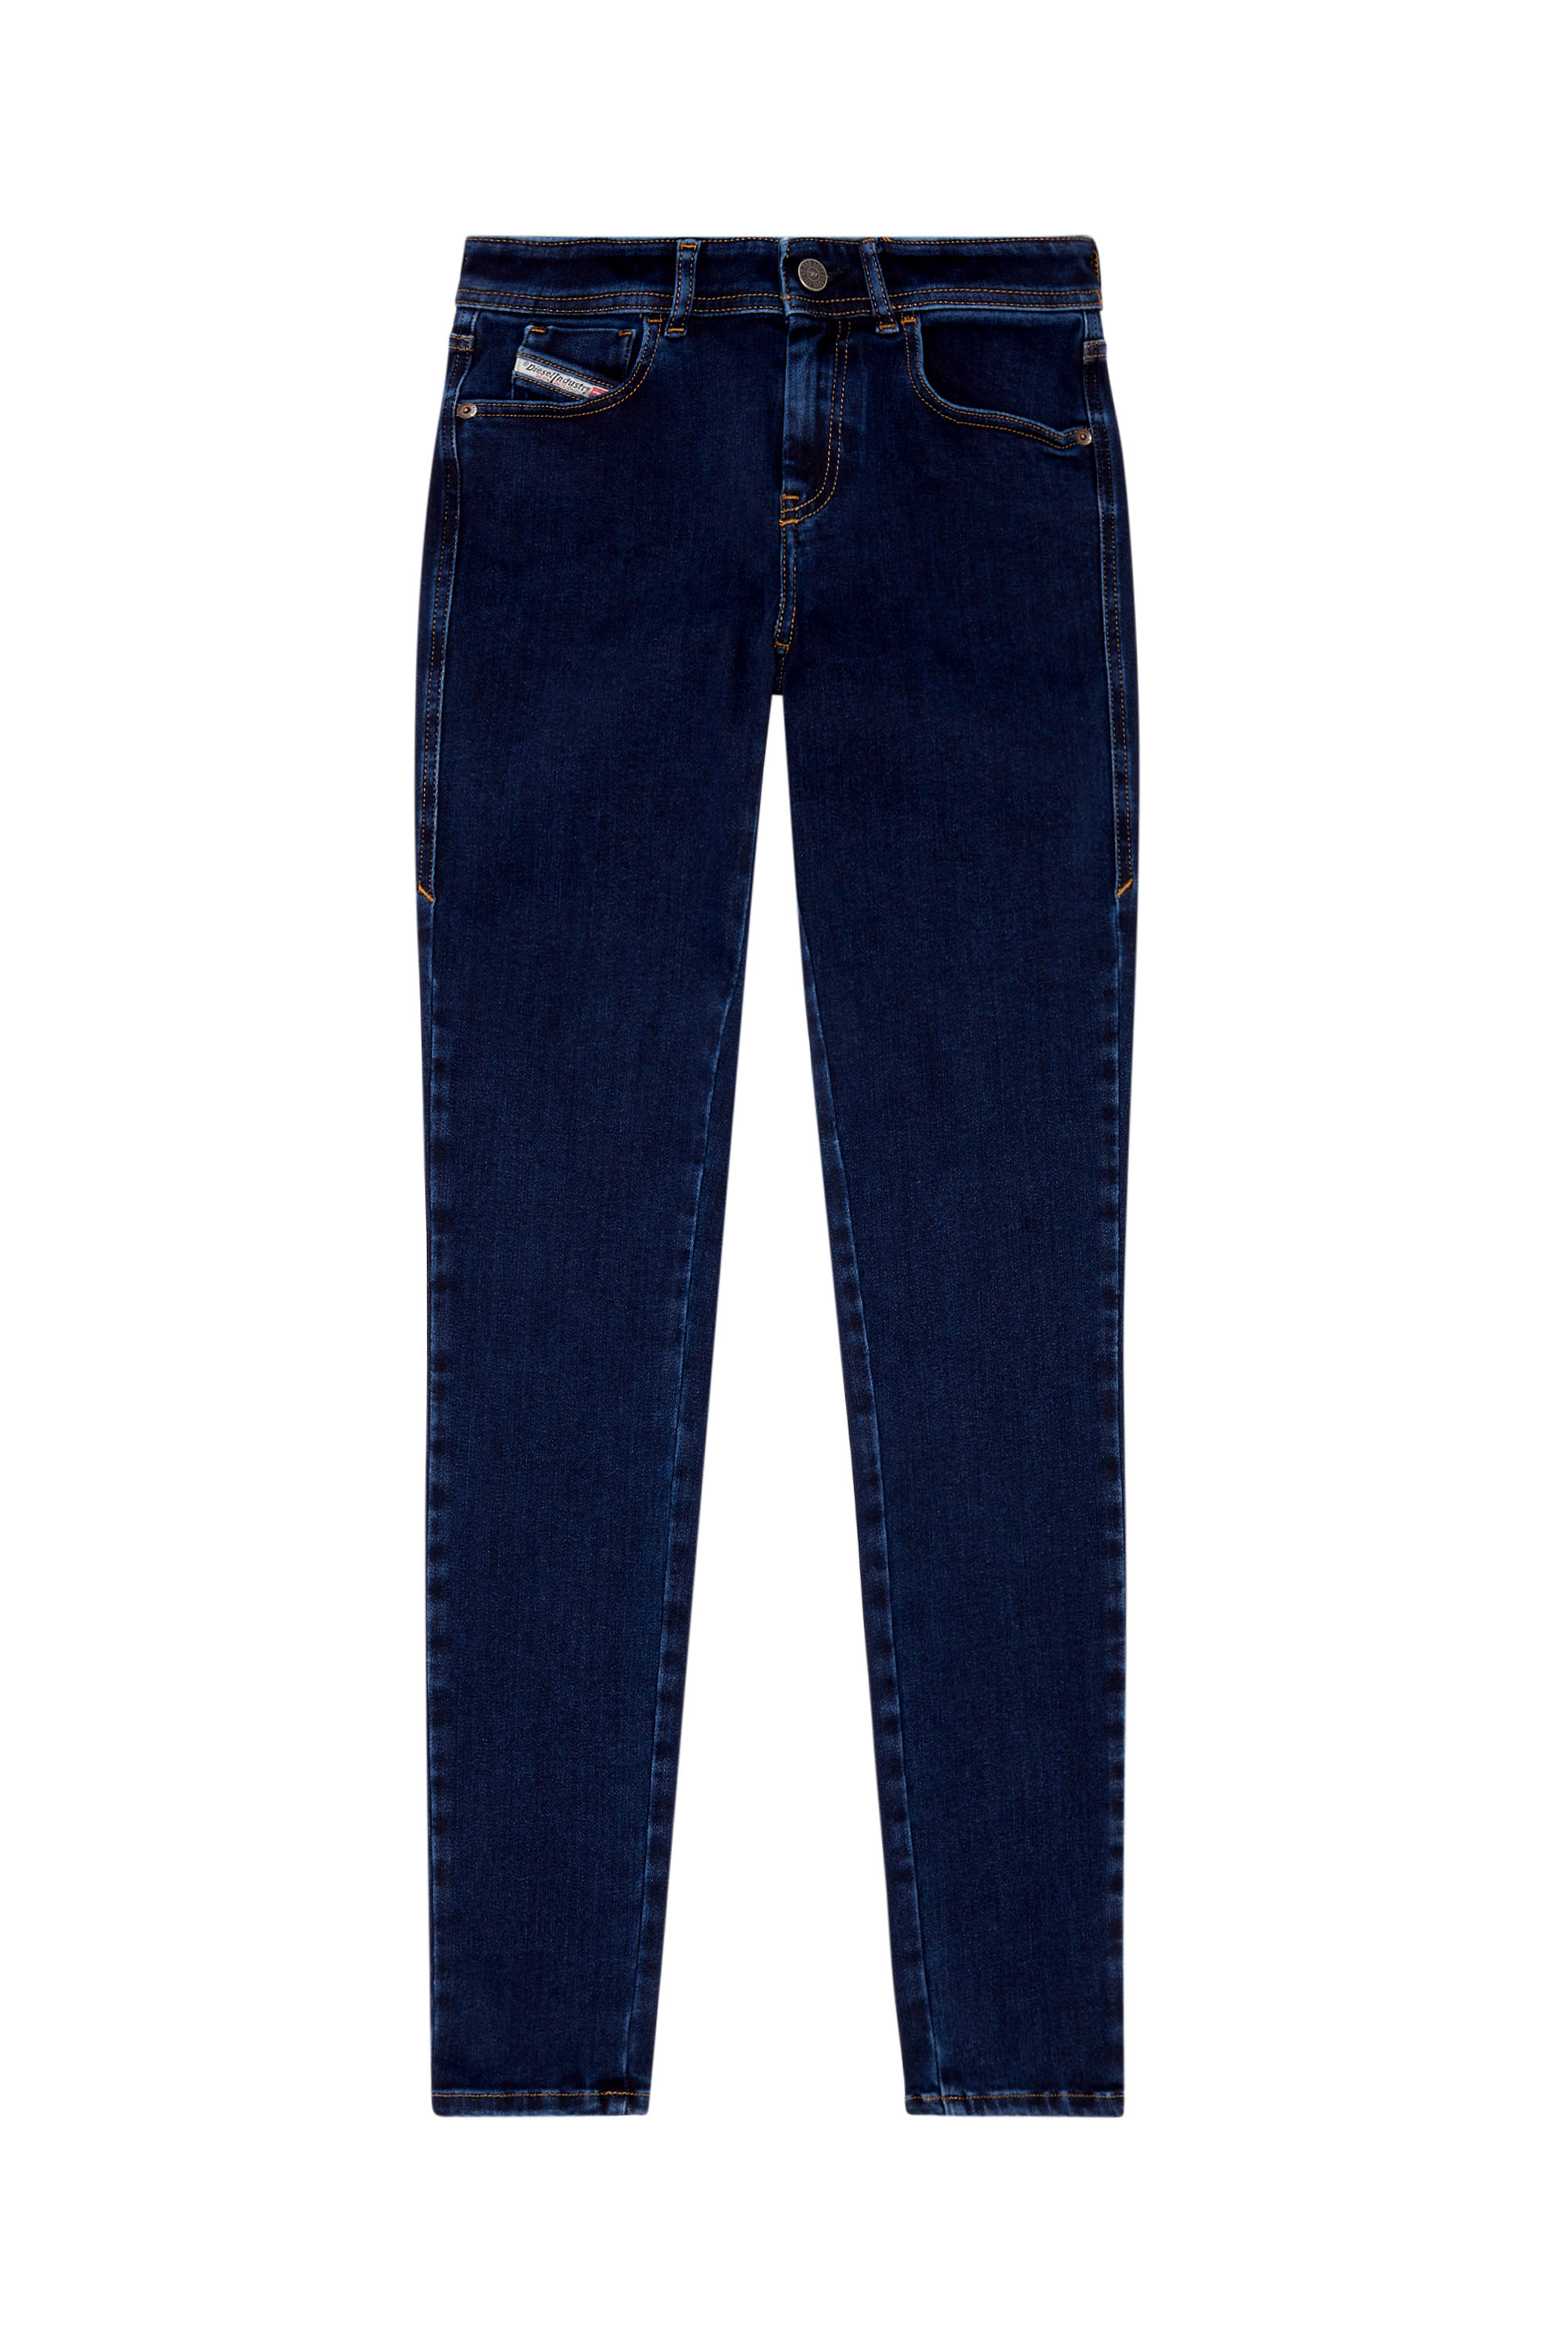 Diesel - Woman Super skinny Jeans 2017 Slandy 09H80, Dark Blue - Image 5